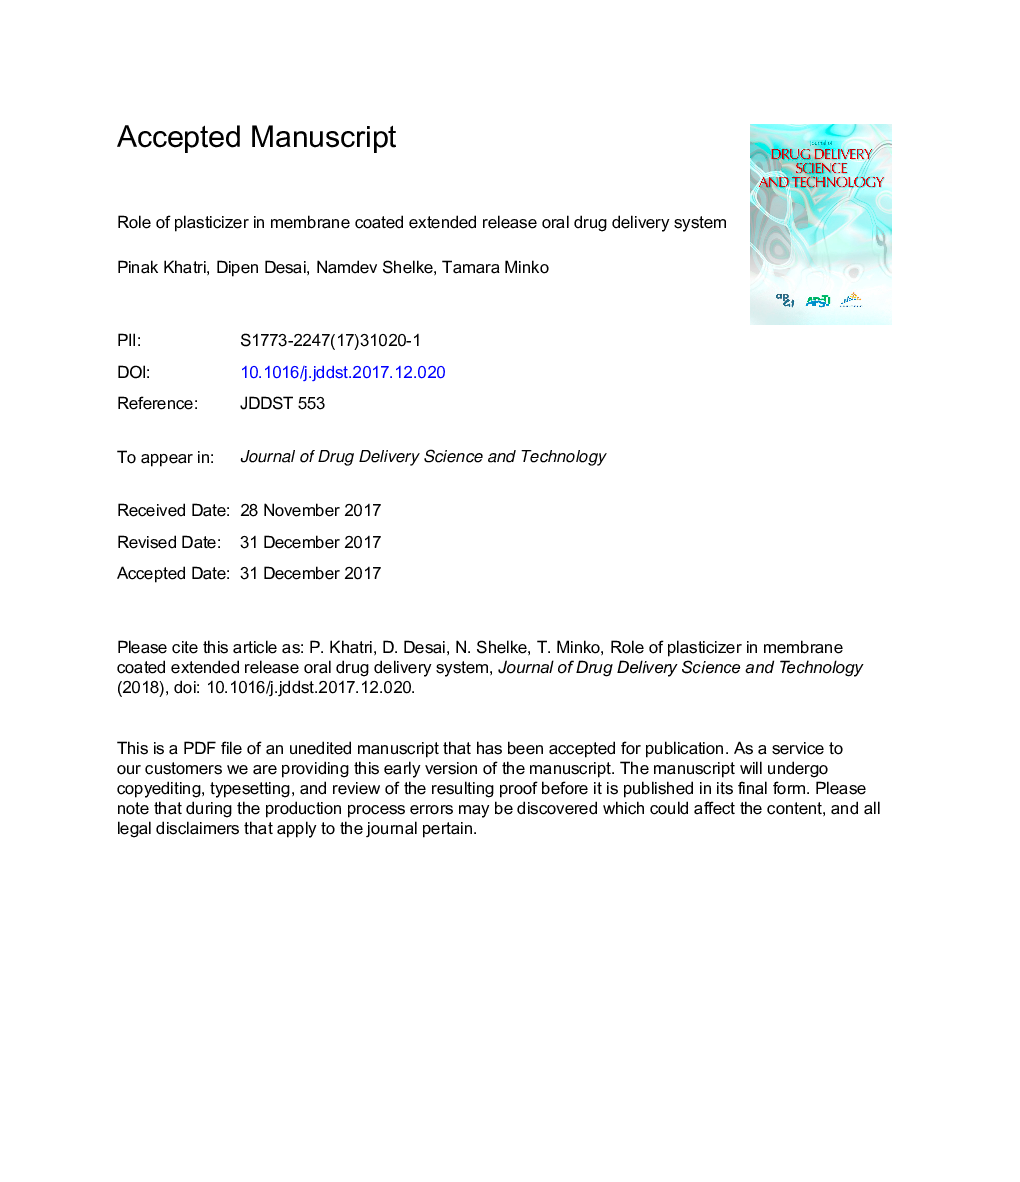 نقش پلاستیسیژن در سیستم غربالگری خوراکی با پوشش پلاستیکی پوشش داده شده 